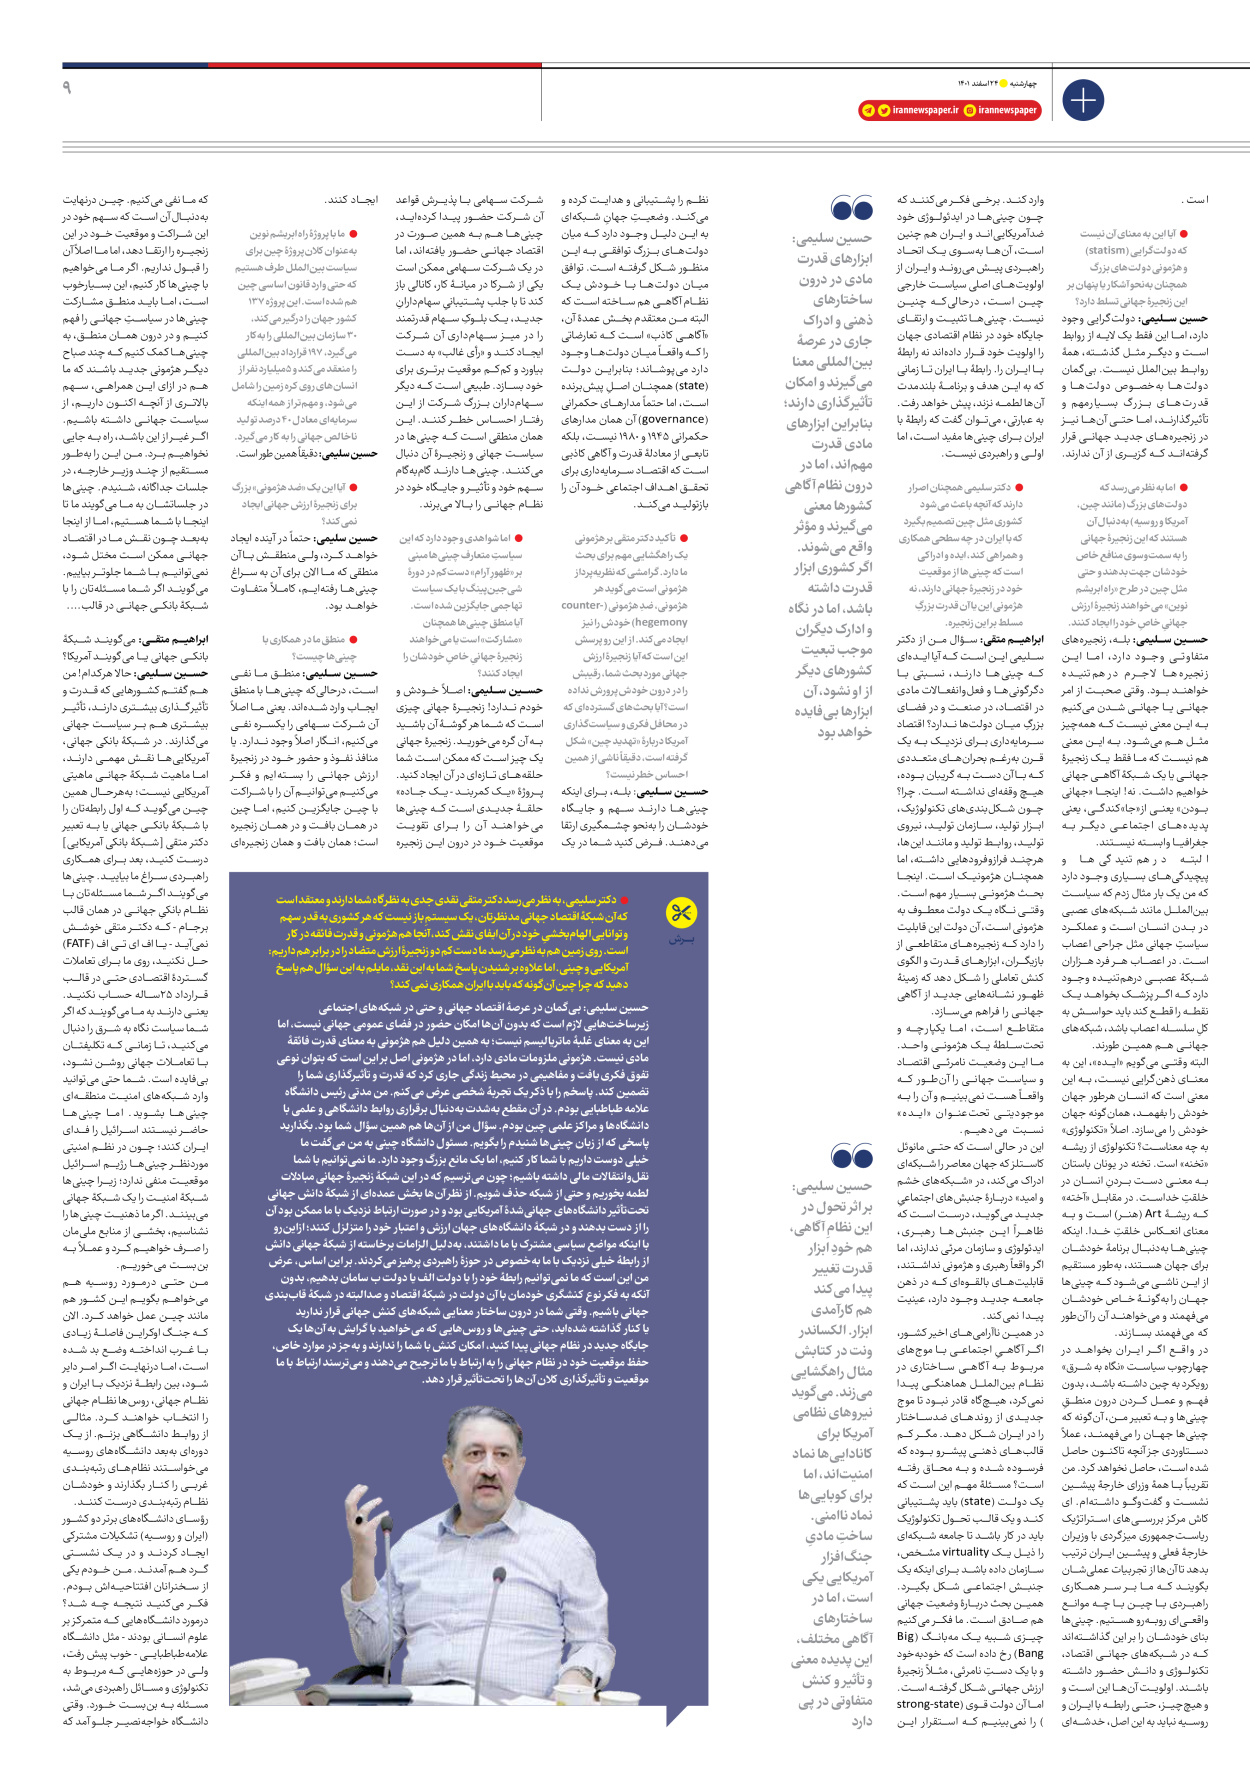 روزنامه ایران - ویژه نامه ویژه نوروز - ۲۴ اسفند ۱۴۰۱ - صفحه ۹